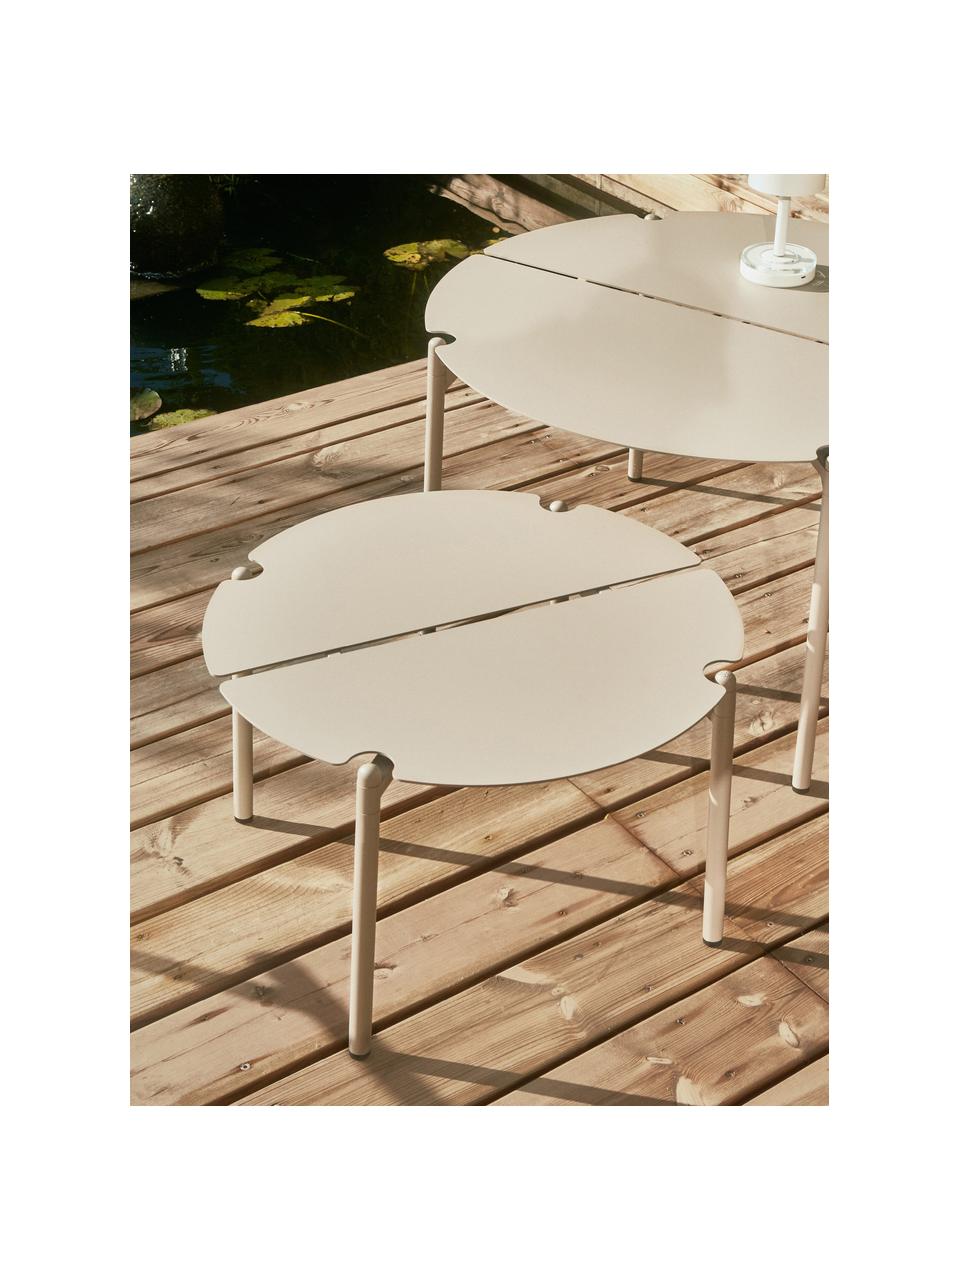 Tavolino da giardino rotondo in metallo Novo, Acciaio rivestito, Beige chiaro, Ø 50 cm